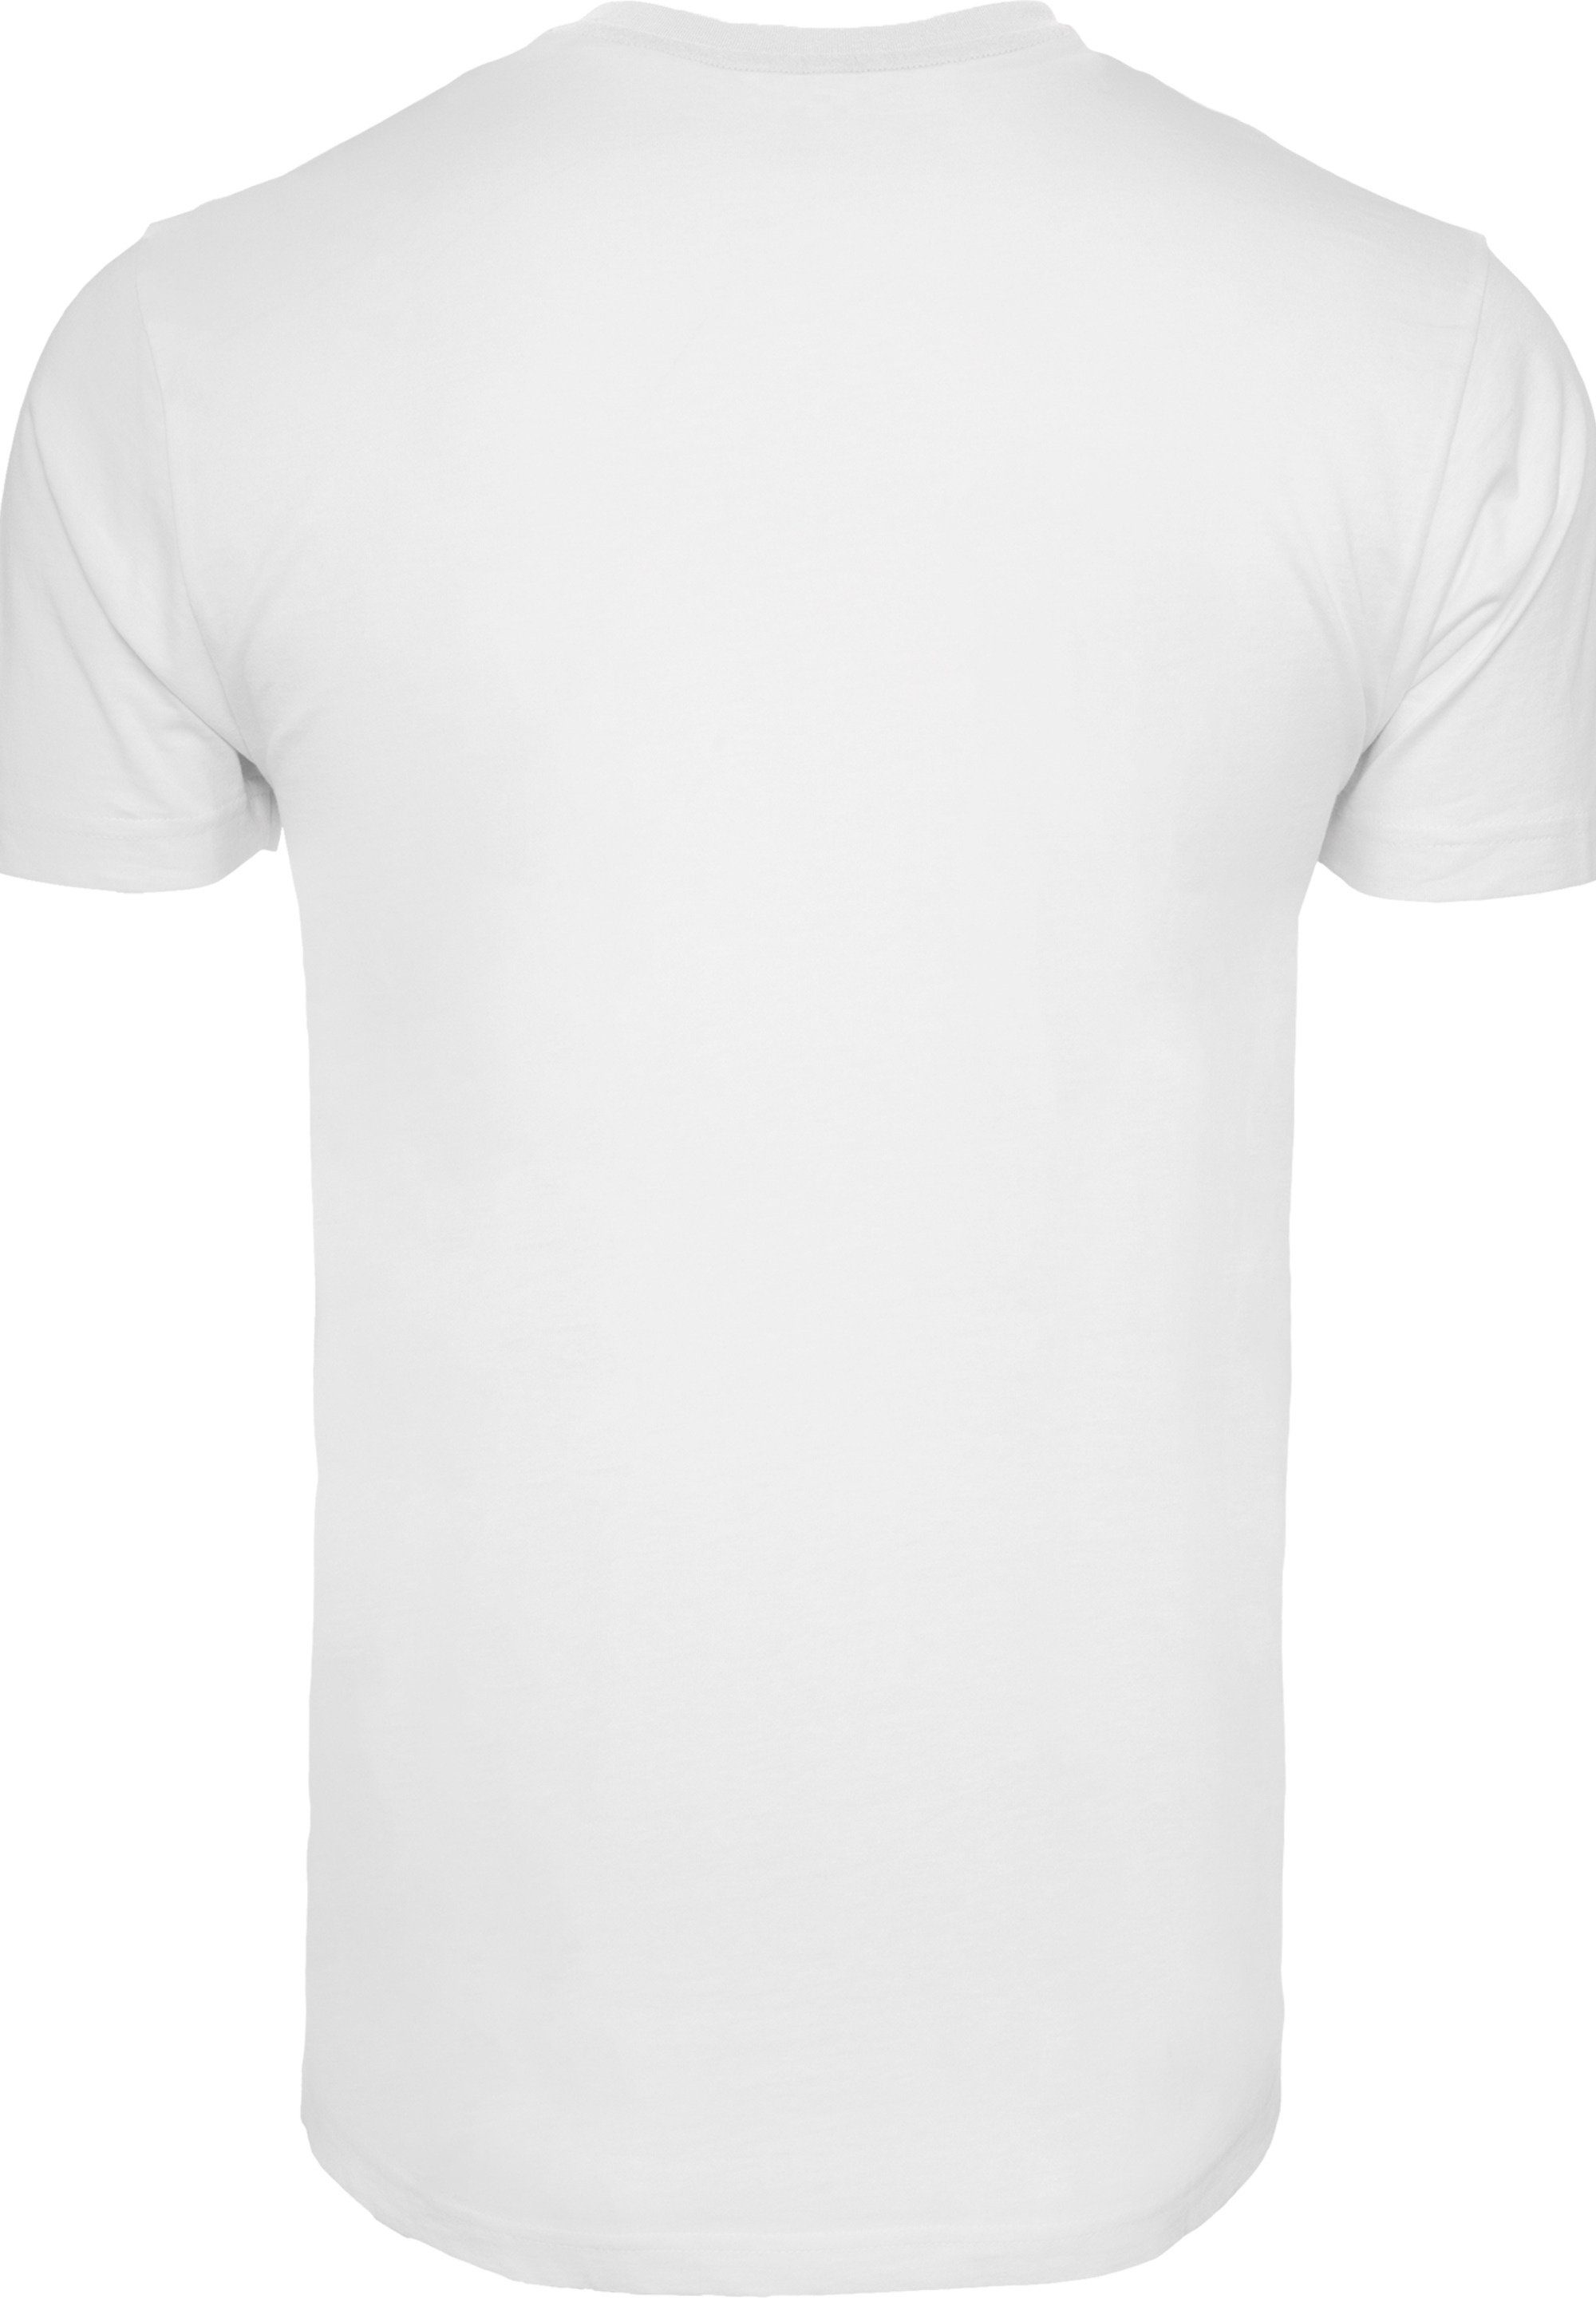 F4NT4STIC T-Shirt Fred Feuerstein weiß Kick Merch,Regular-Fit,Basic,Bedruckt Herren,Premium